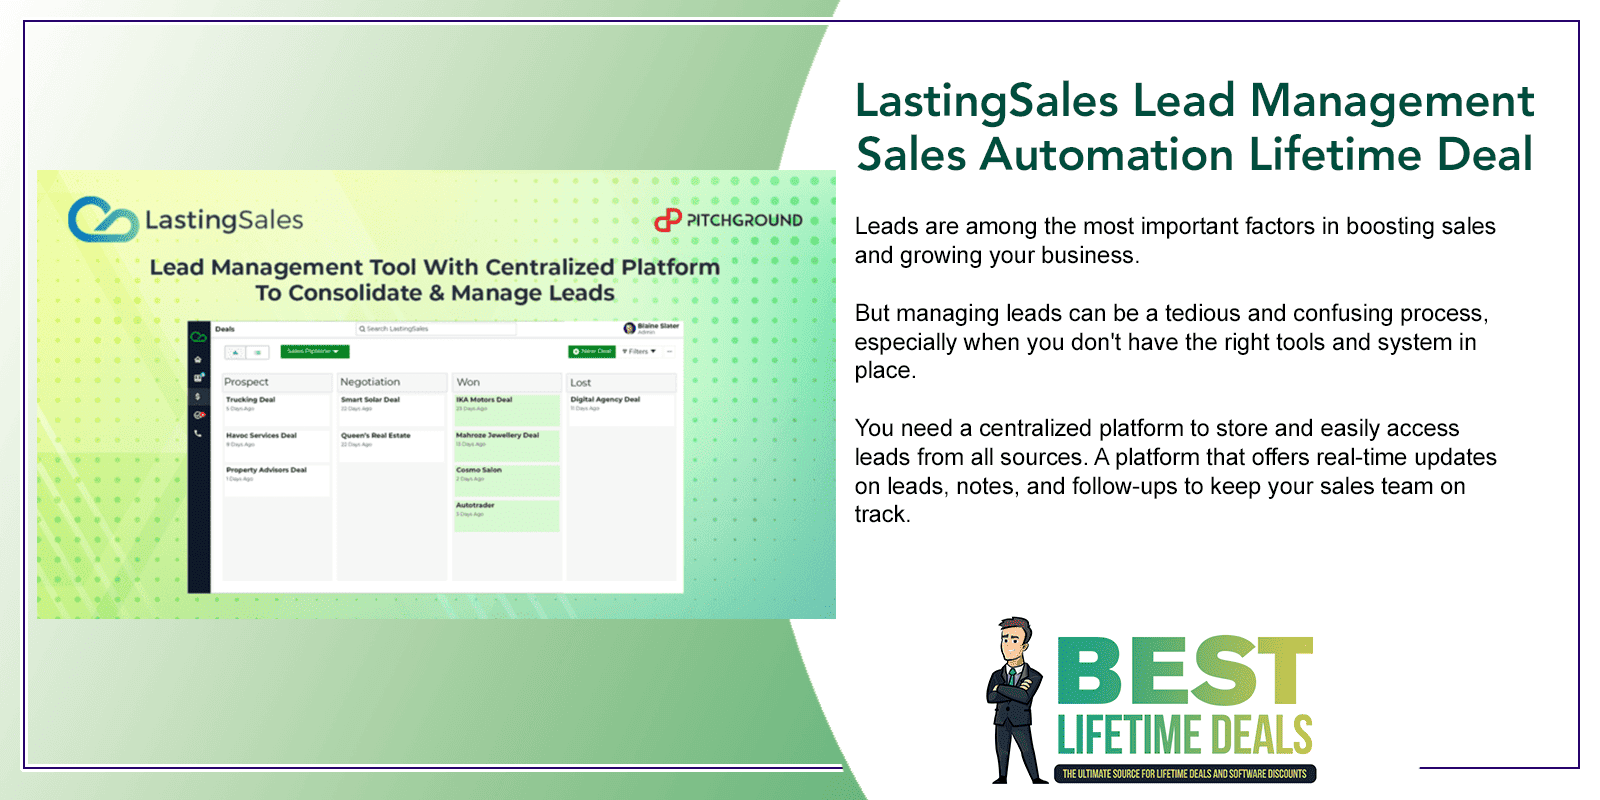 LastingSales Lead Management Sales Automation Lifetime Deal